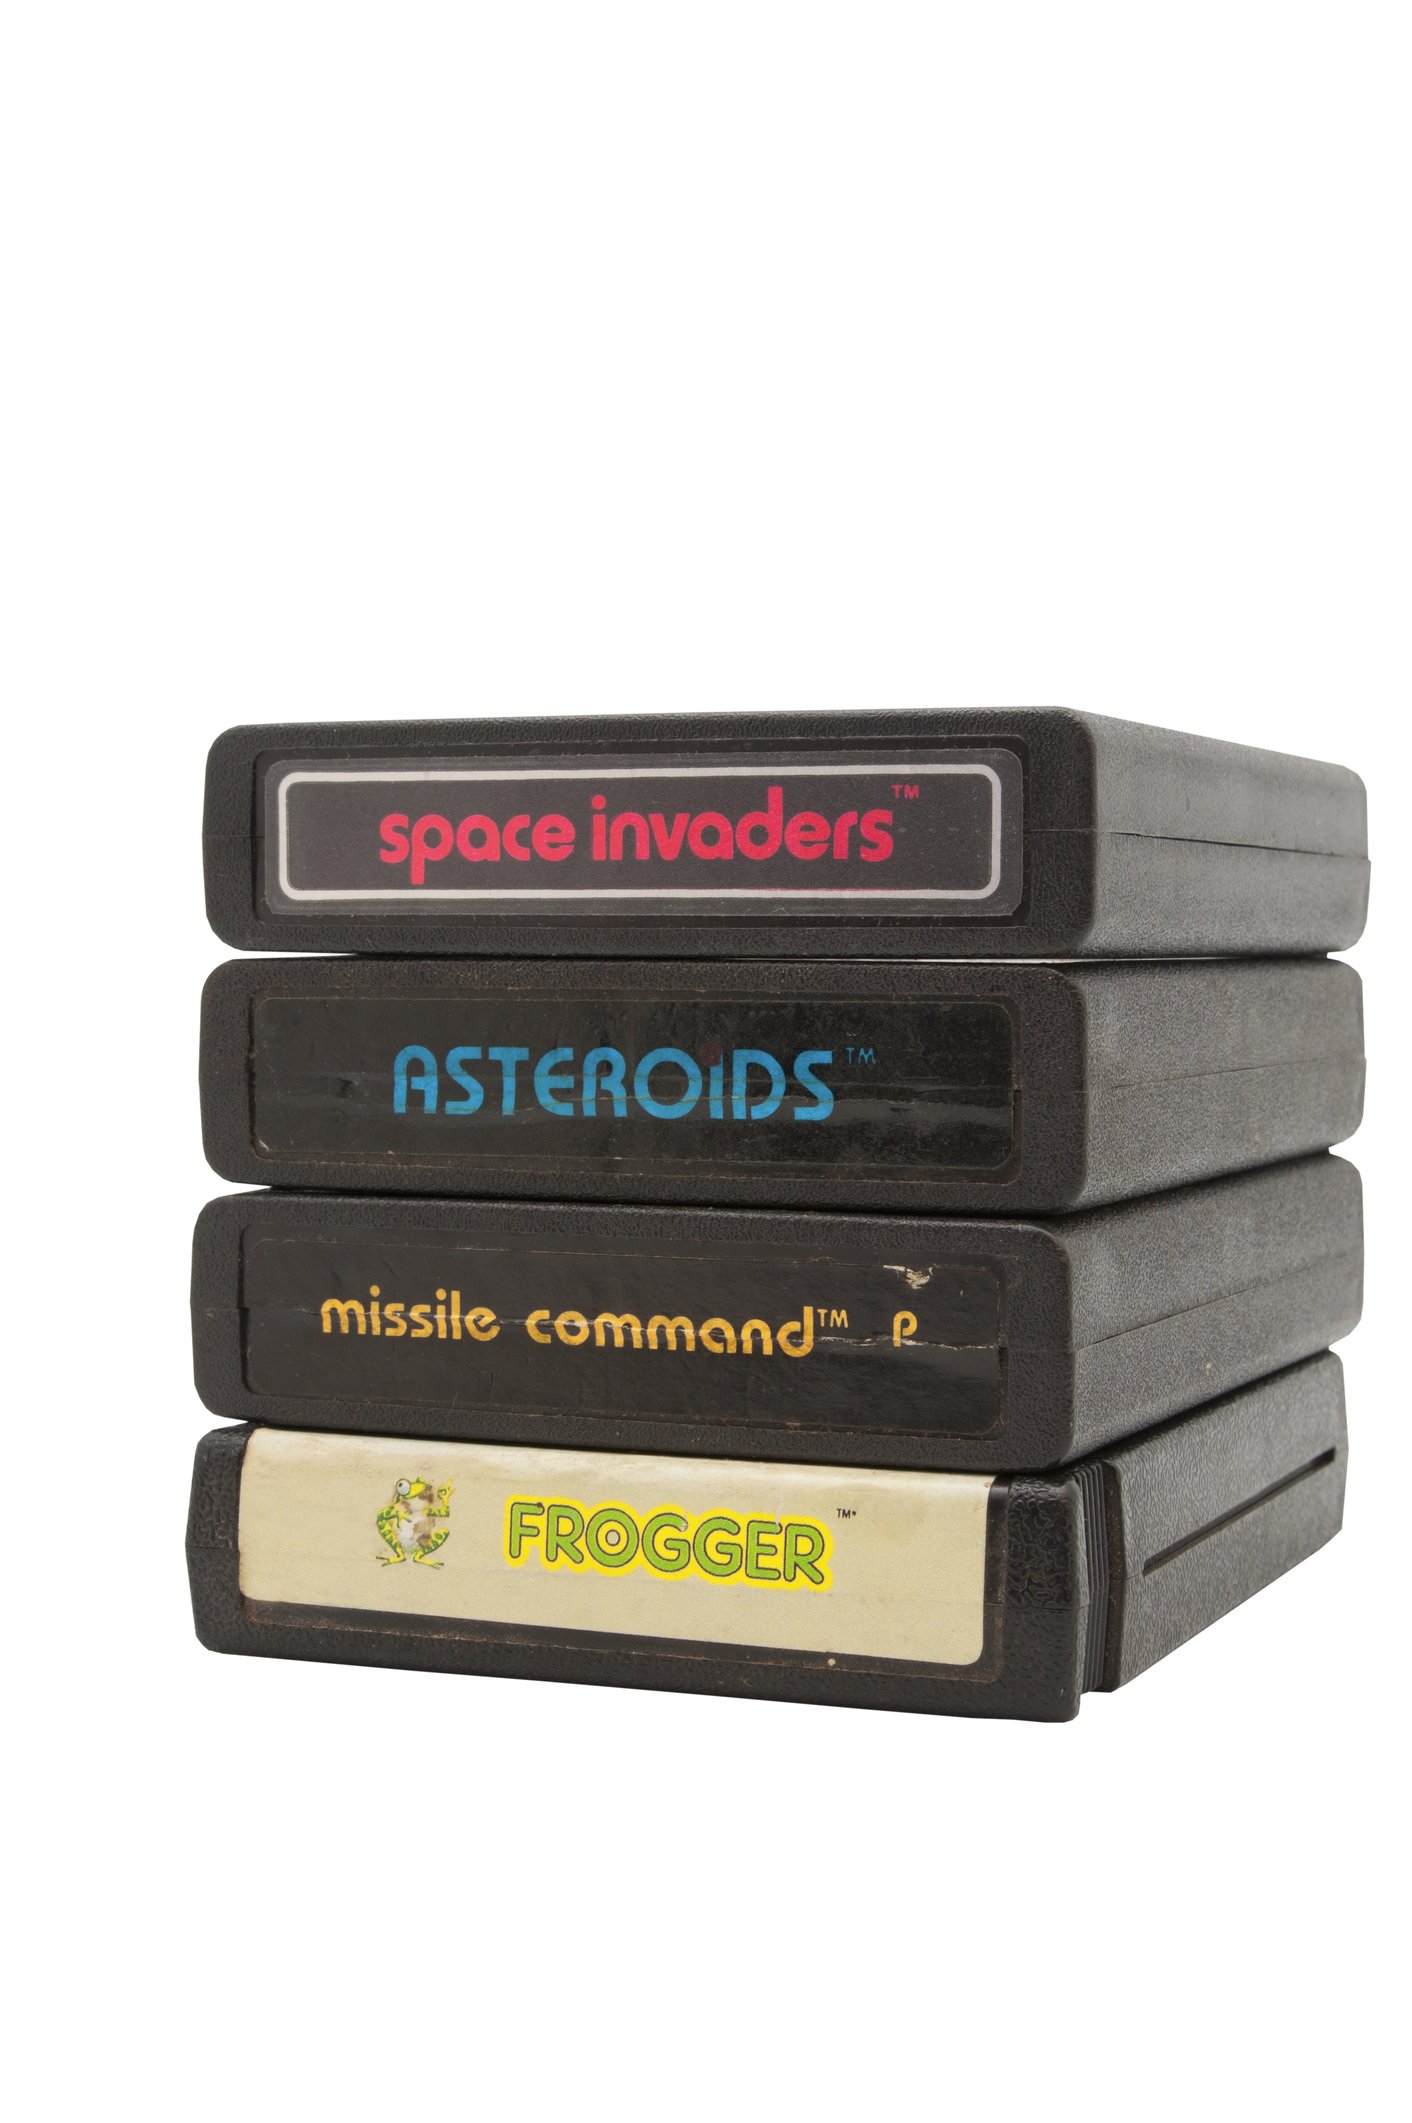 Atari 2600 Game Cartridges